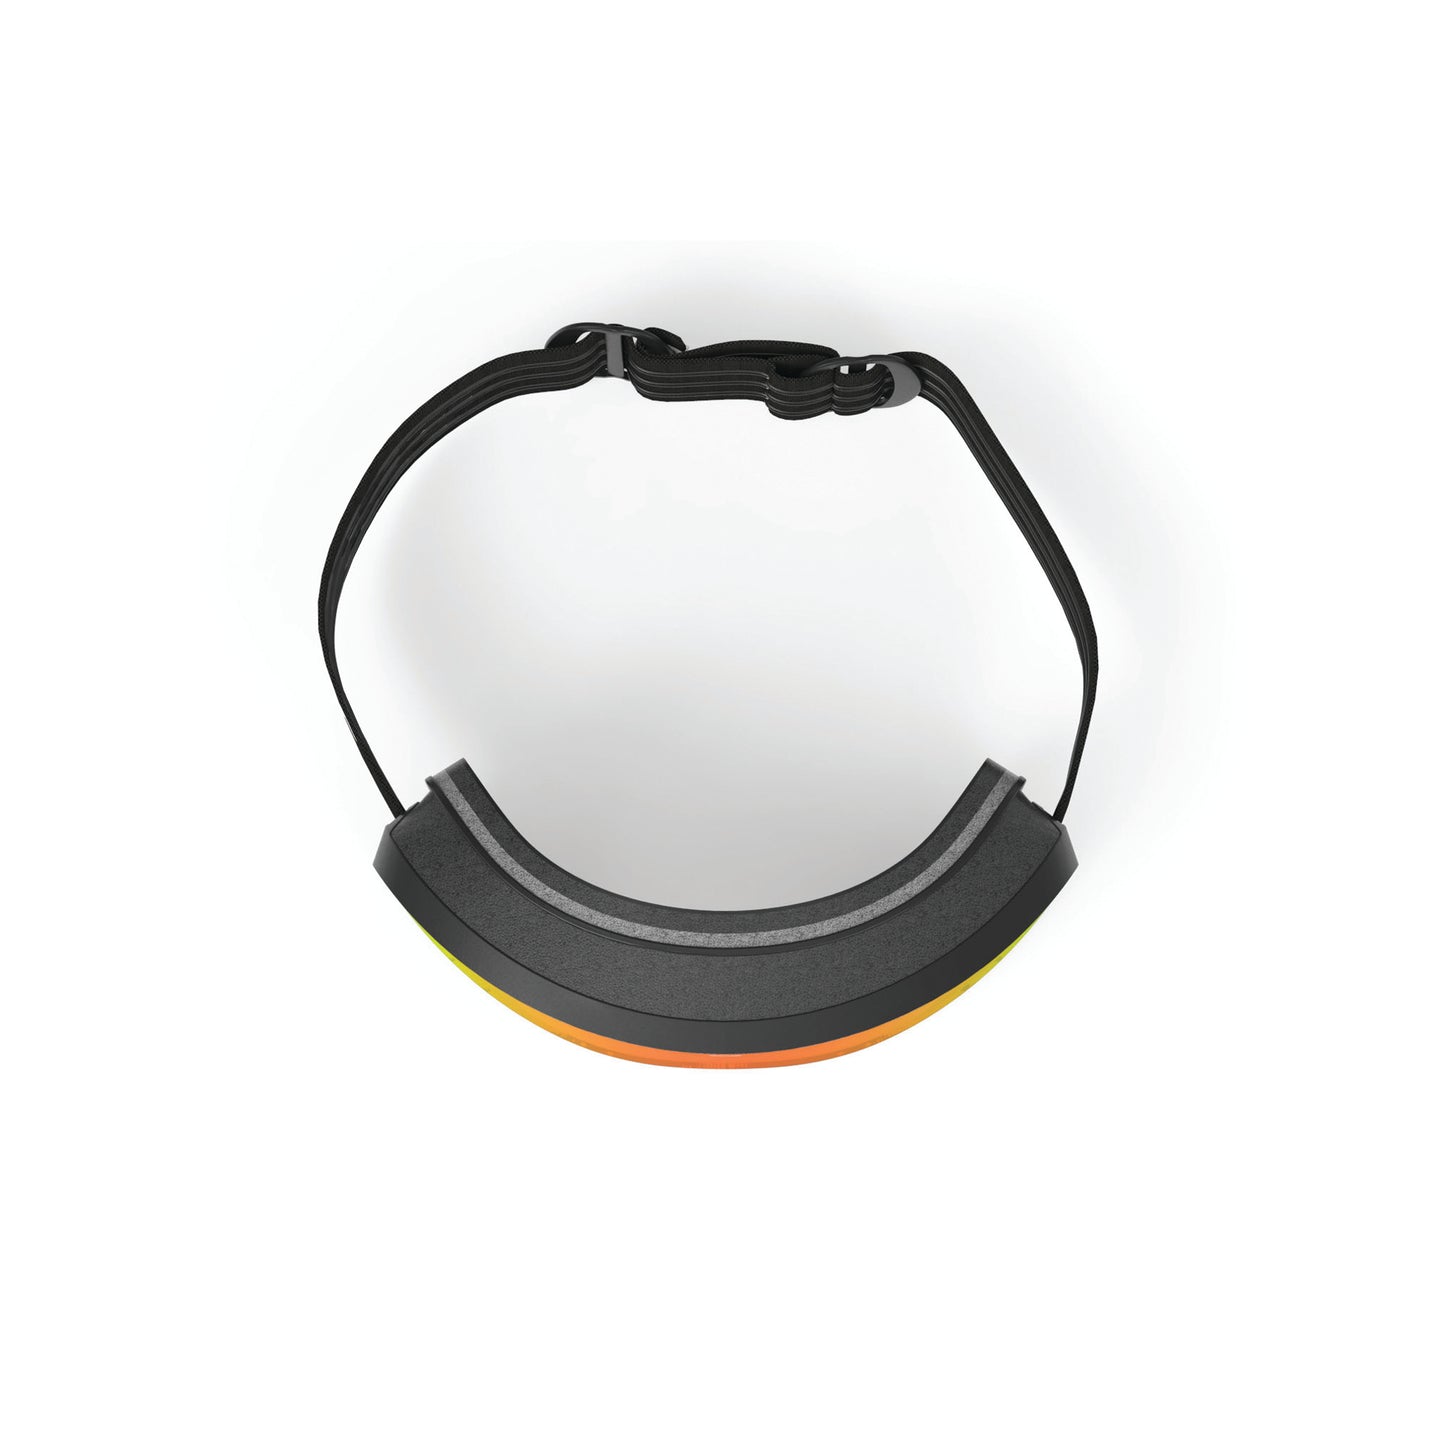 Skermo Rimless Goggle in Black Matte-Multilaser Orange Lens